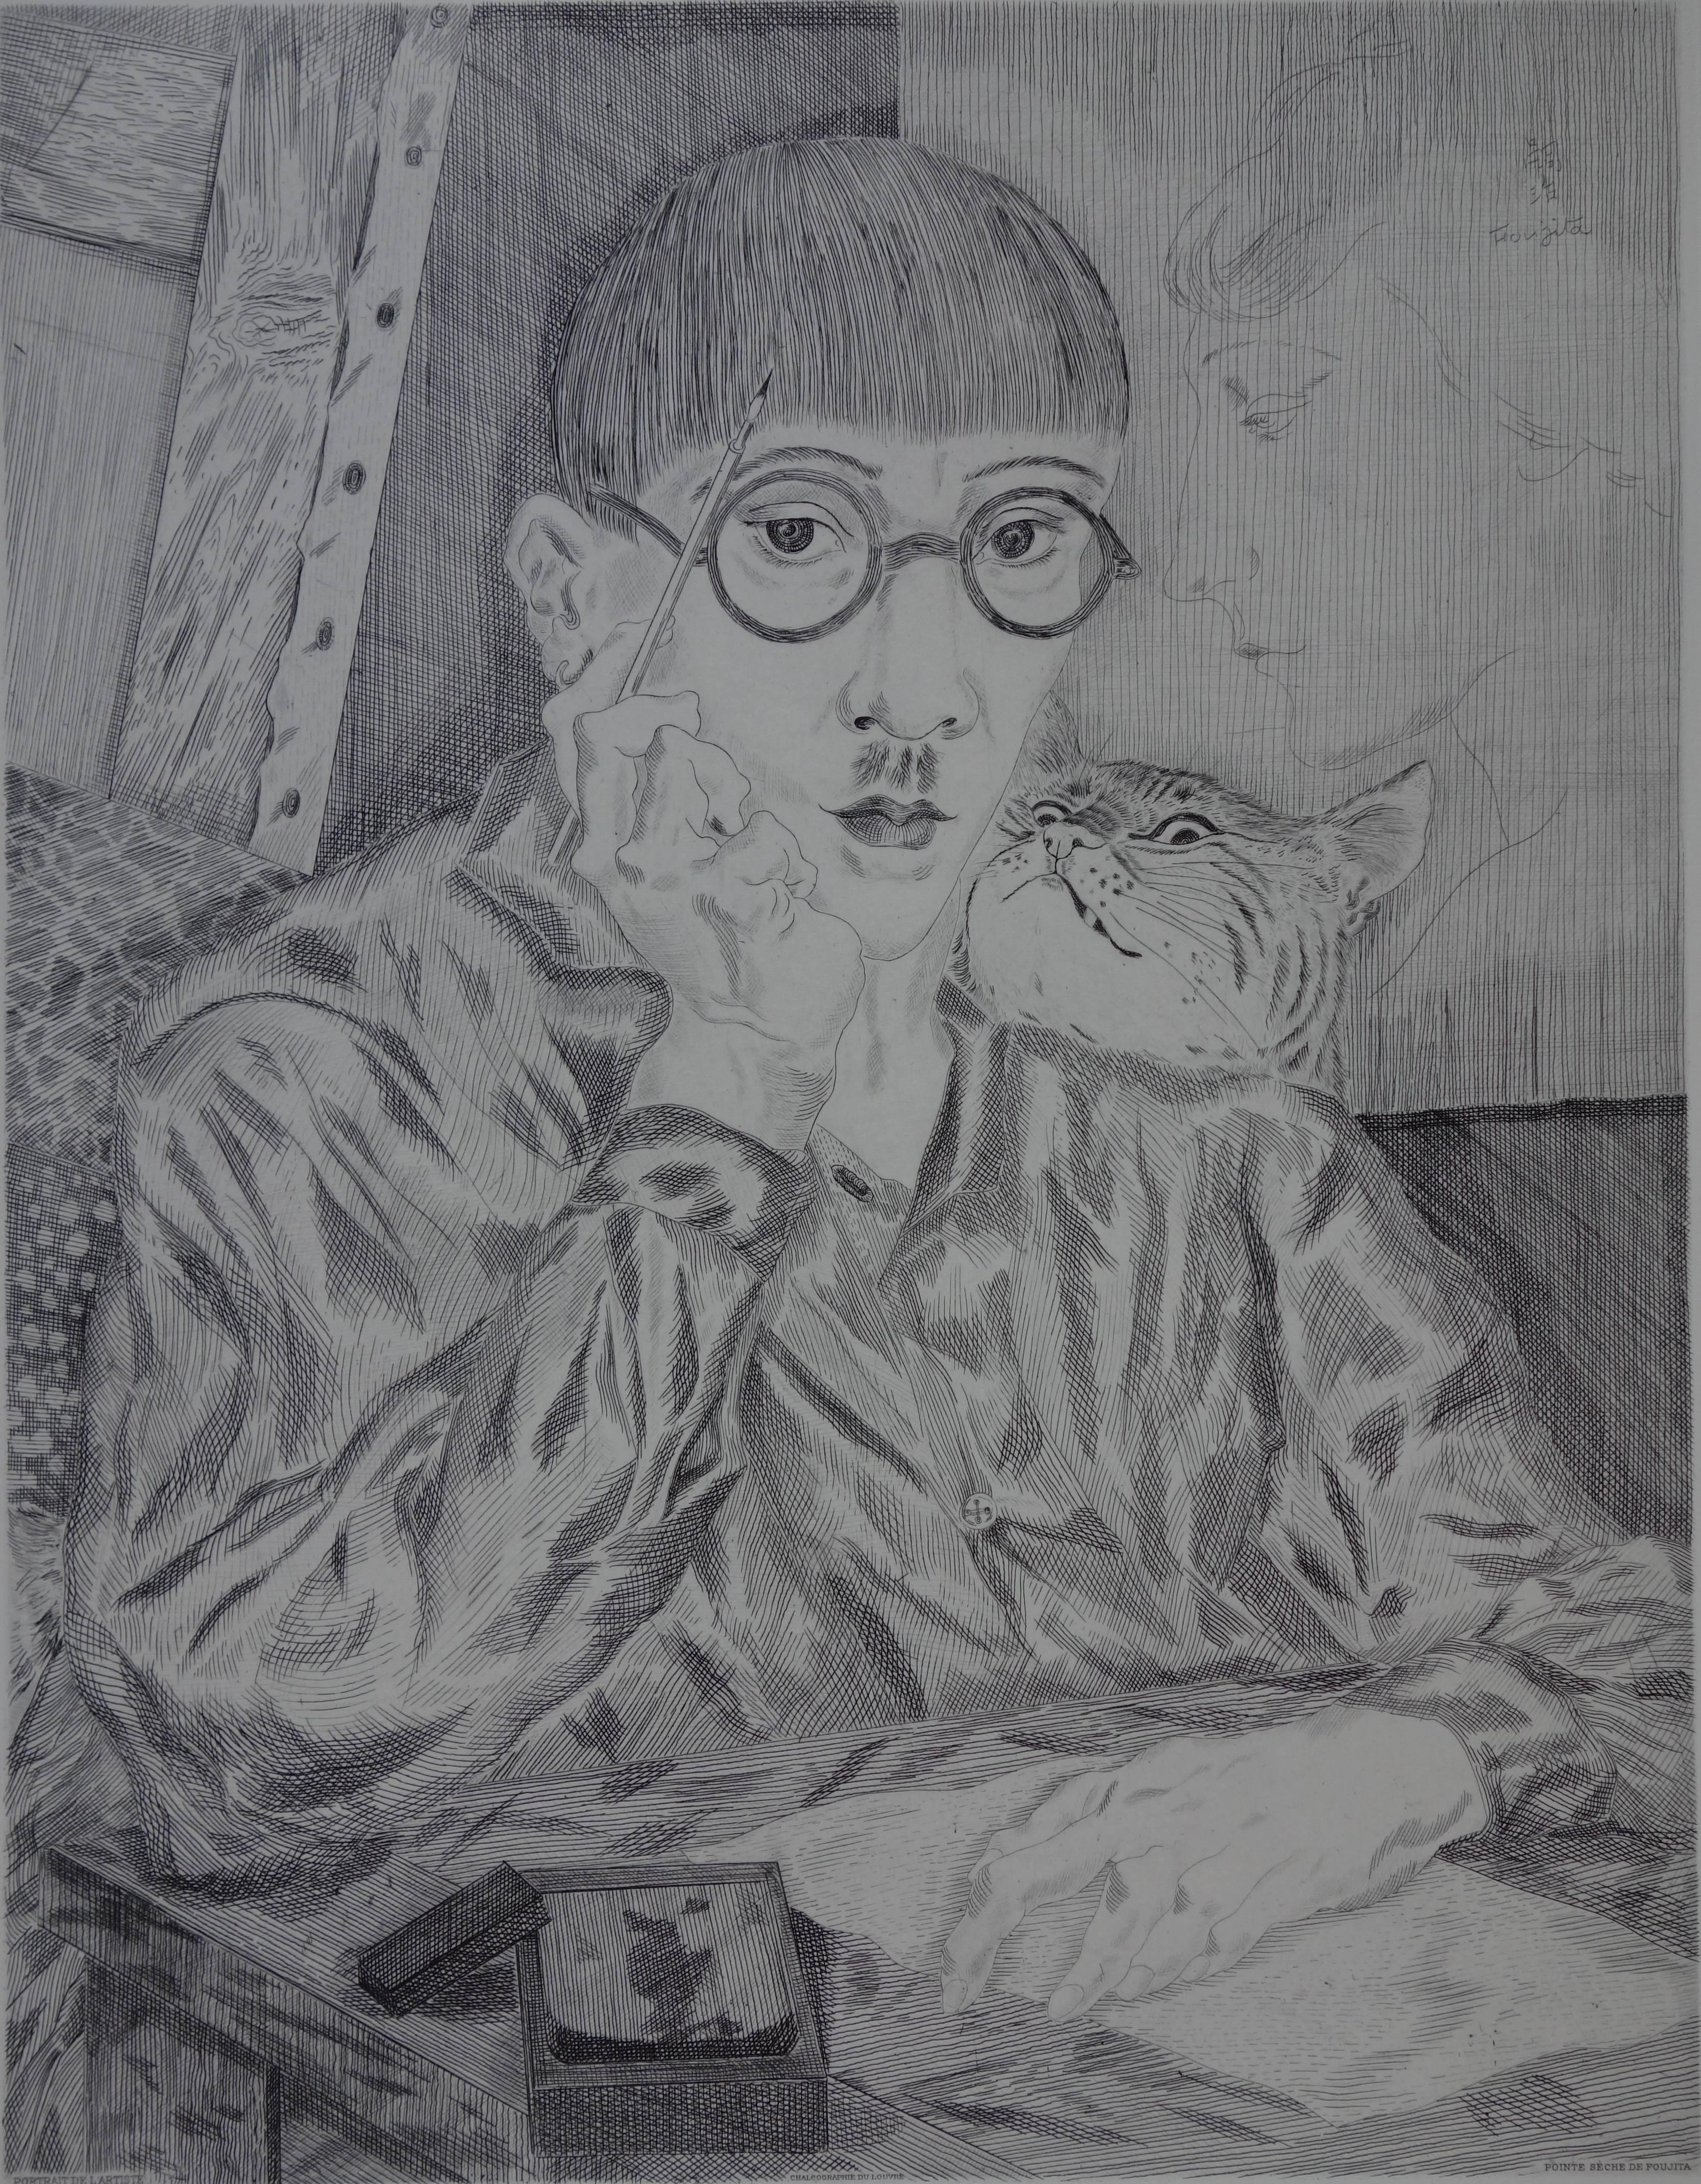 Leonard Tsuguharu FOUJITA
Self-Portrait  mit einer Katze

Original Kaltnadelradierung
Gedruckte Unterschrift auf der Platte
Auf Vellum 65 x 50 cm (ca. 26 x 20in)
Seltener Probedruck auf Japanpapier, aufgetragen auf Vellum
Posthume Ausgabe der